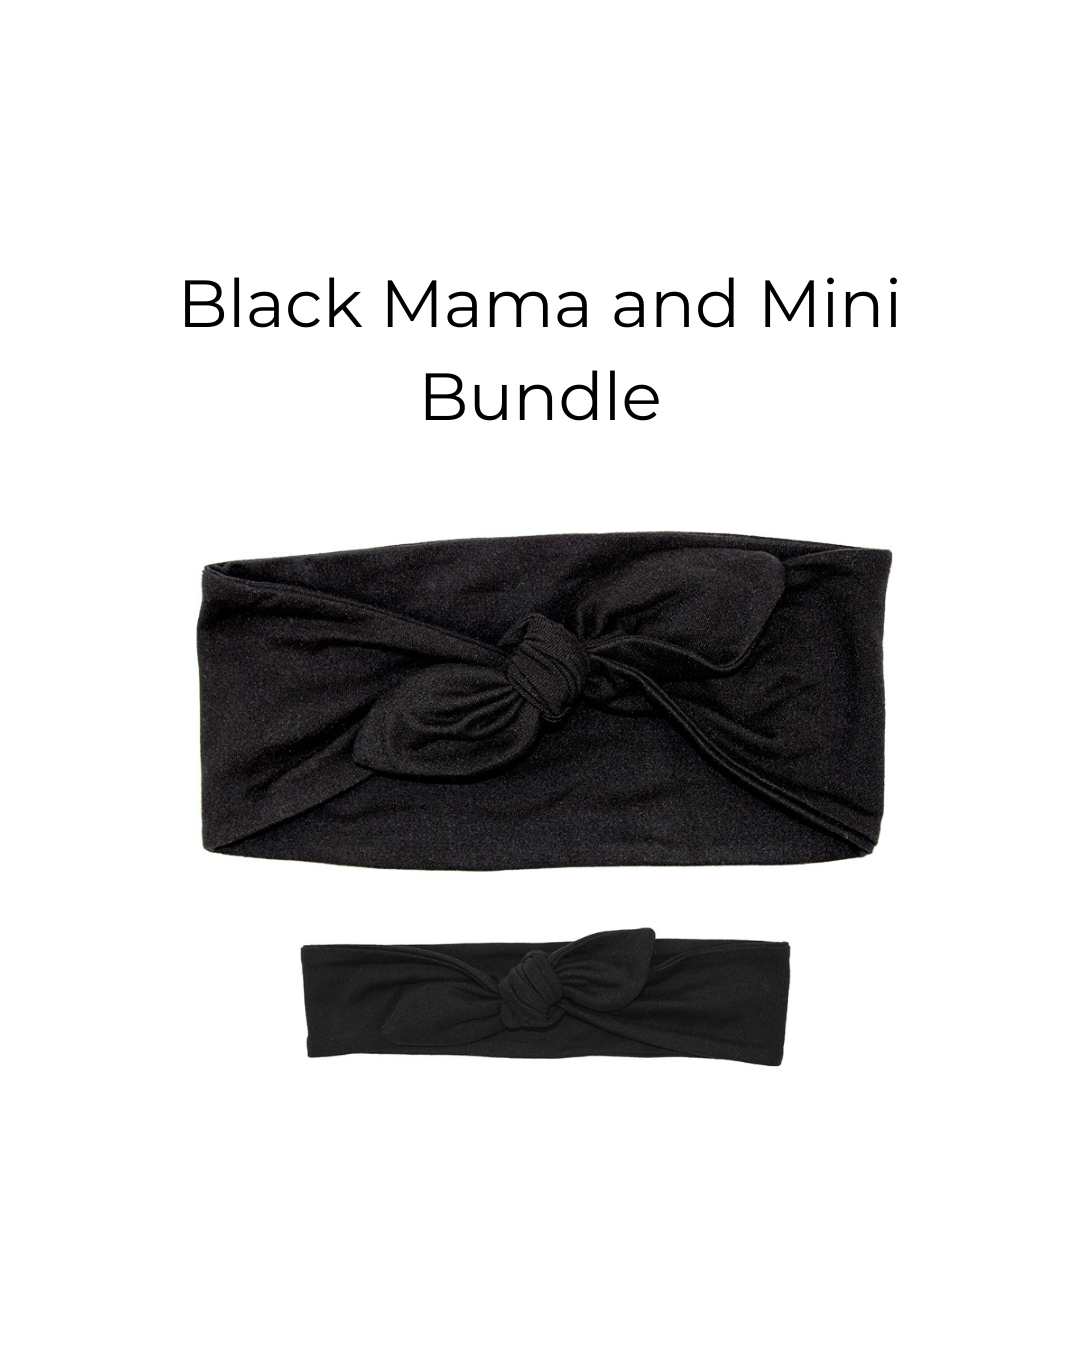 Black Mama and Mini Headband Bundle